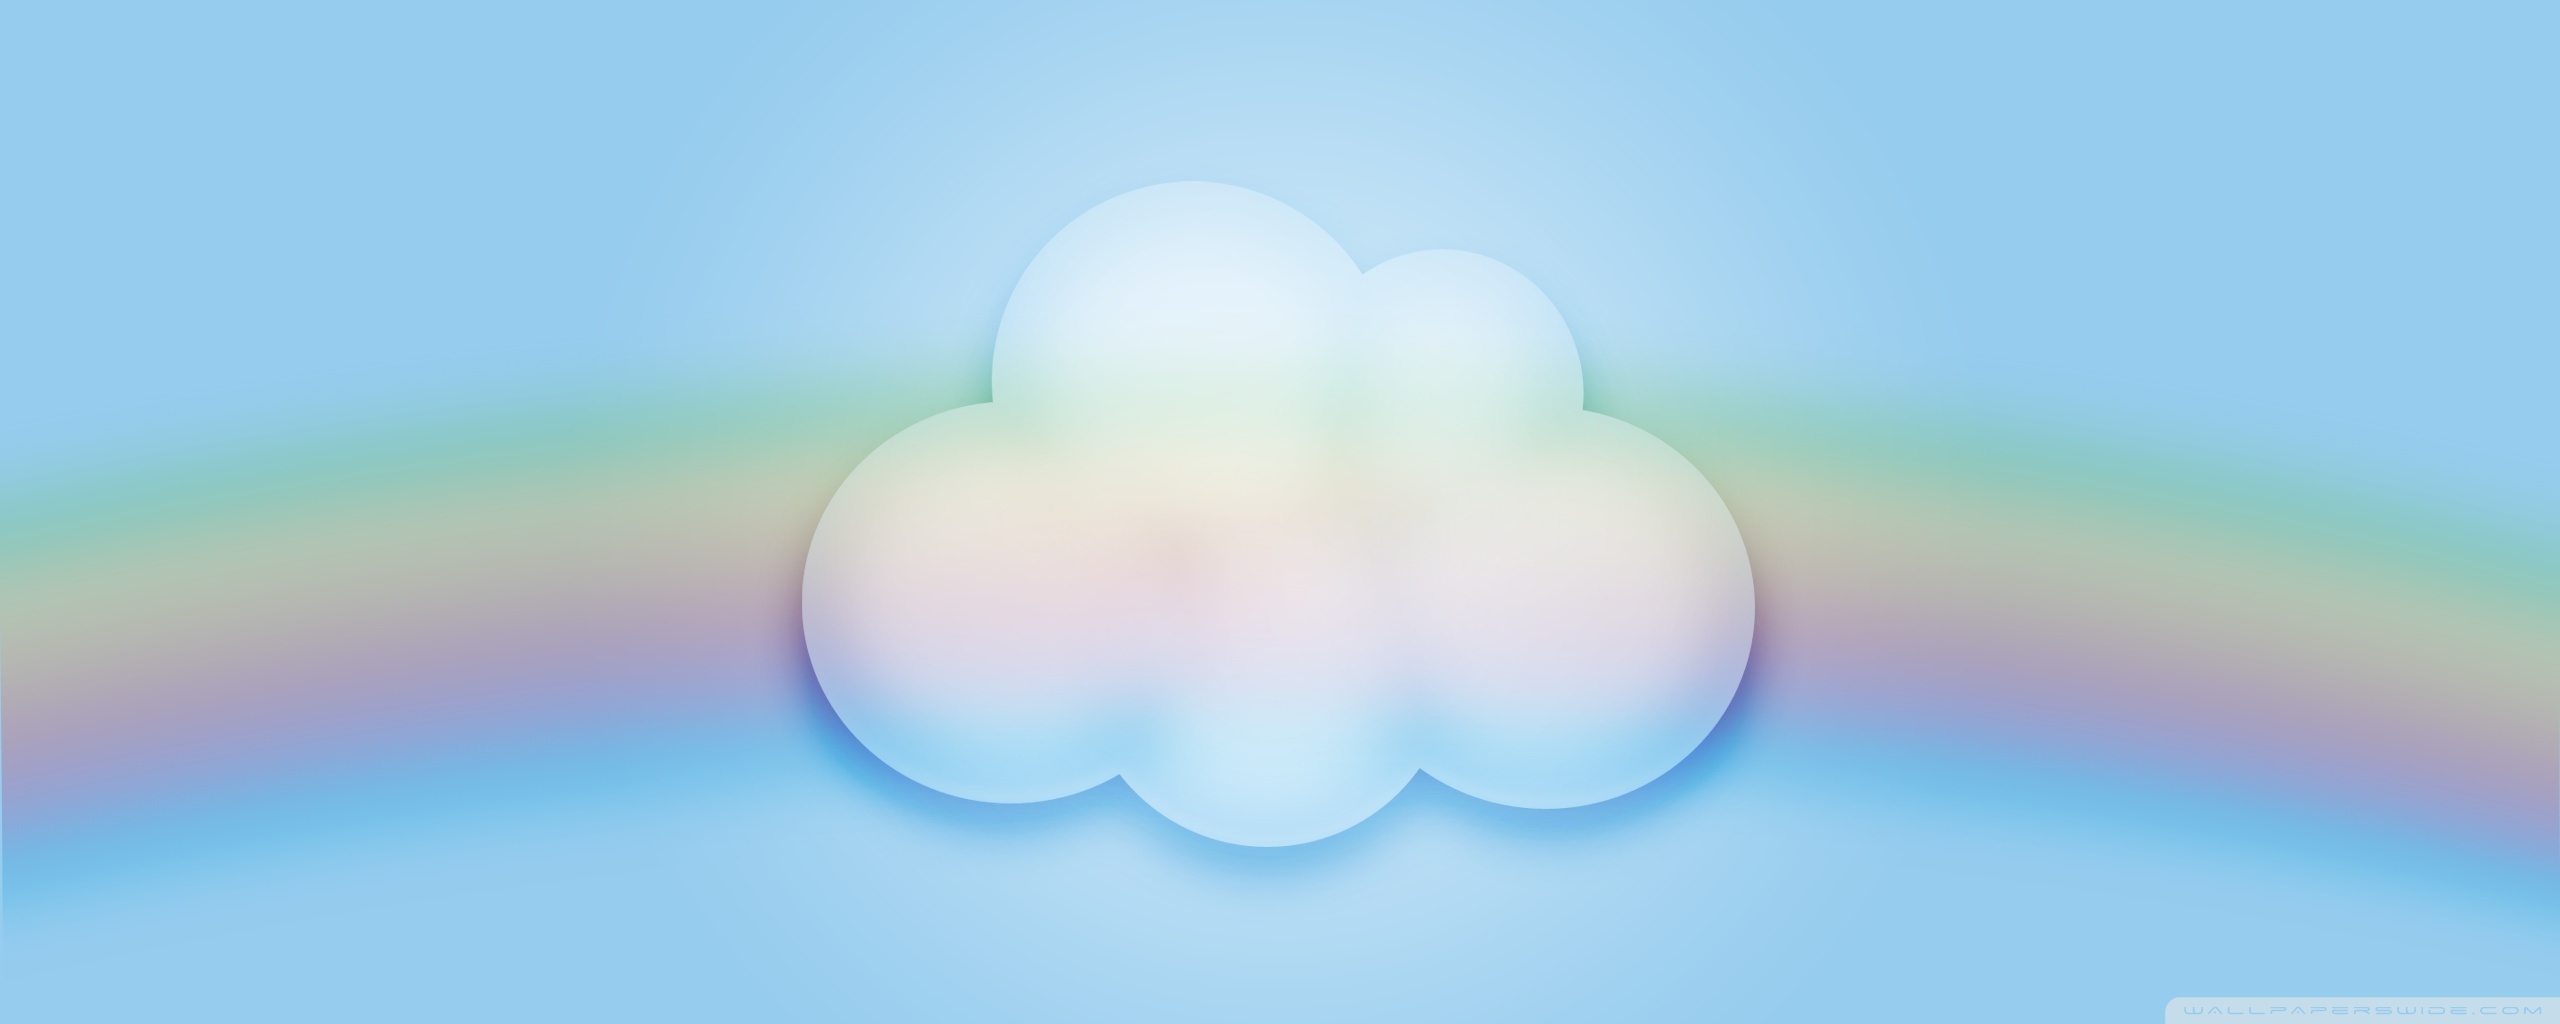 Cute Cloud Ultra HD Desktop Background Wallpaper for 4K UHD TV : Multi